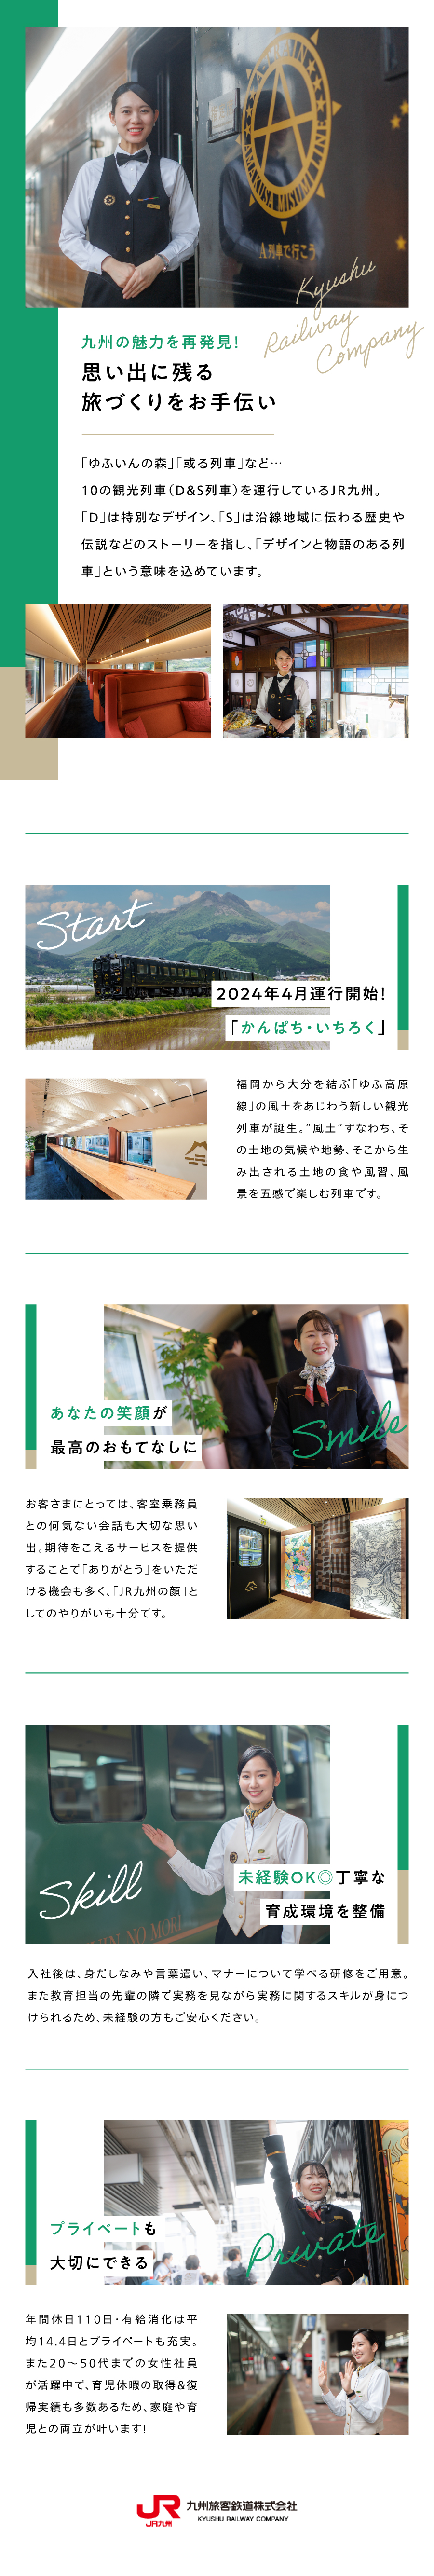 九州旅客鉄道株式会社からのメッセージ